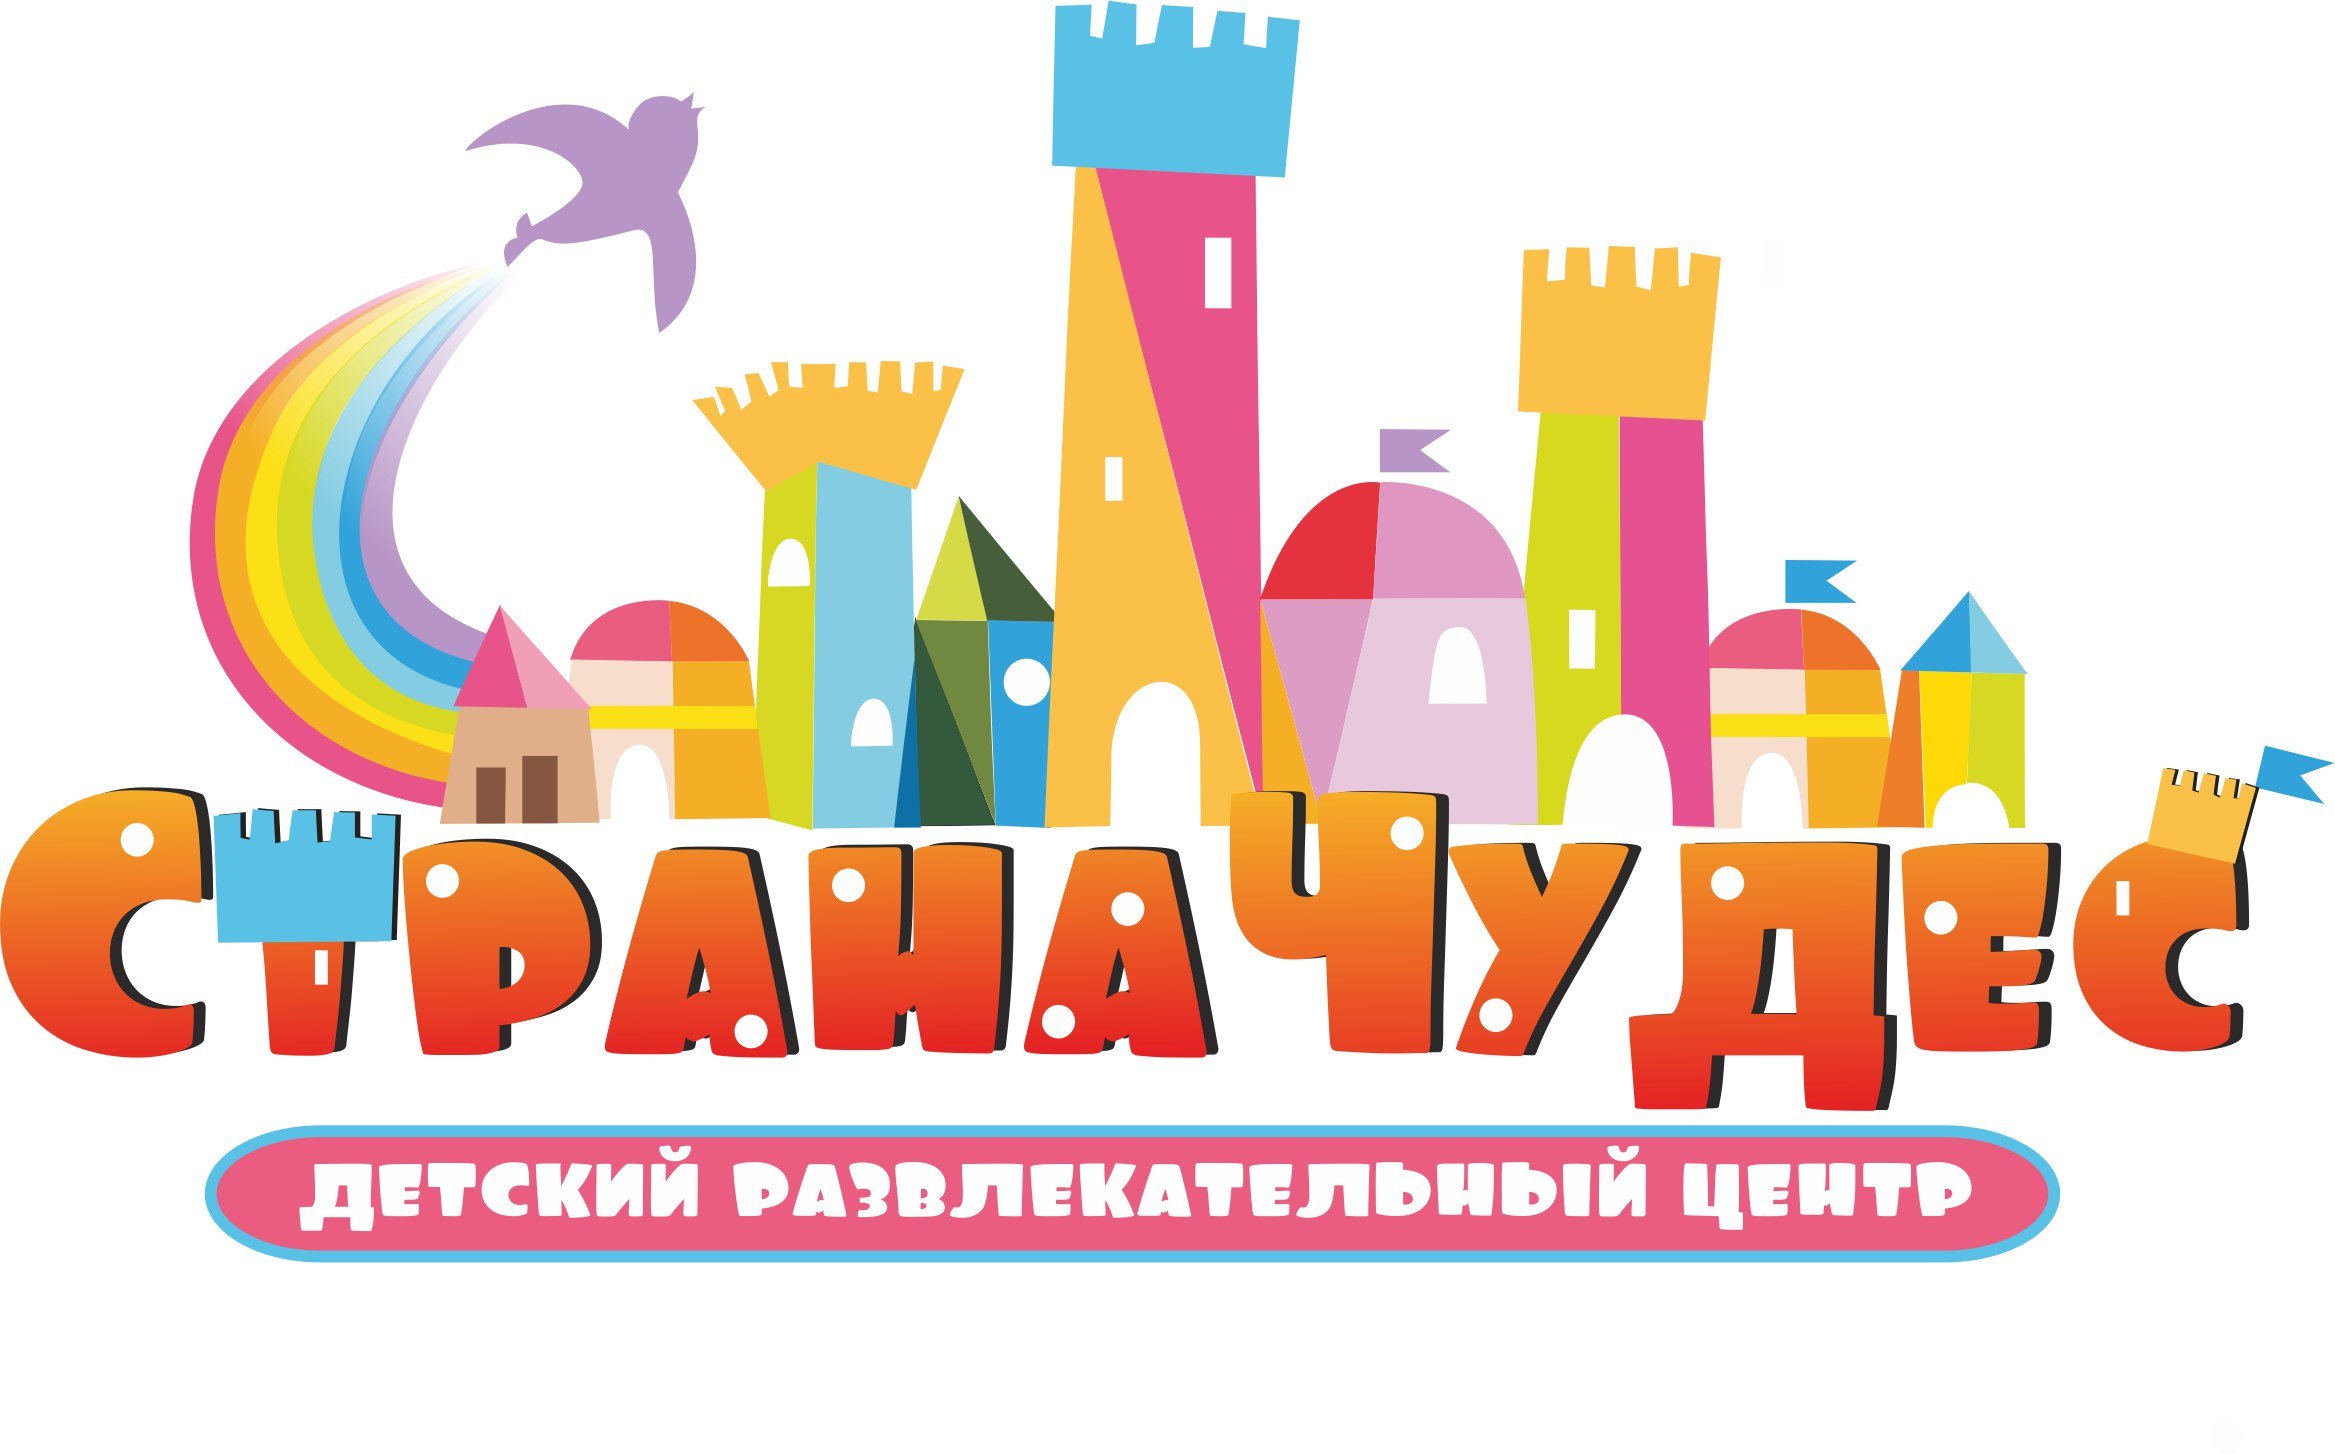 Логотип развивательного центра для детей